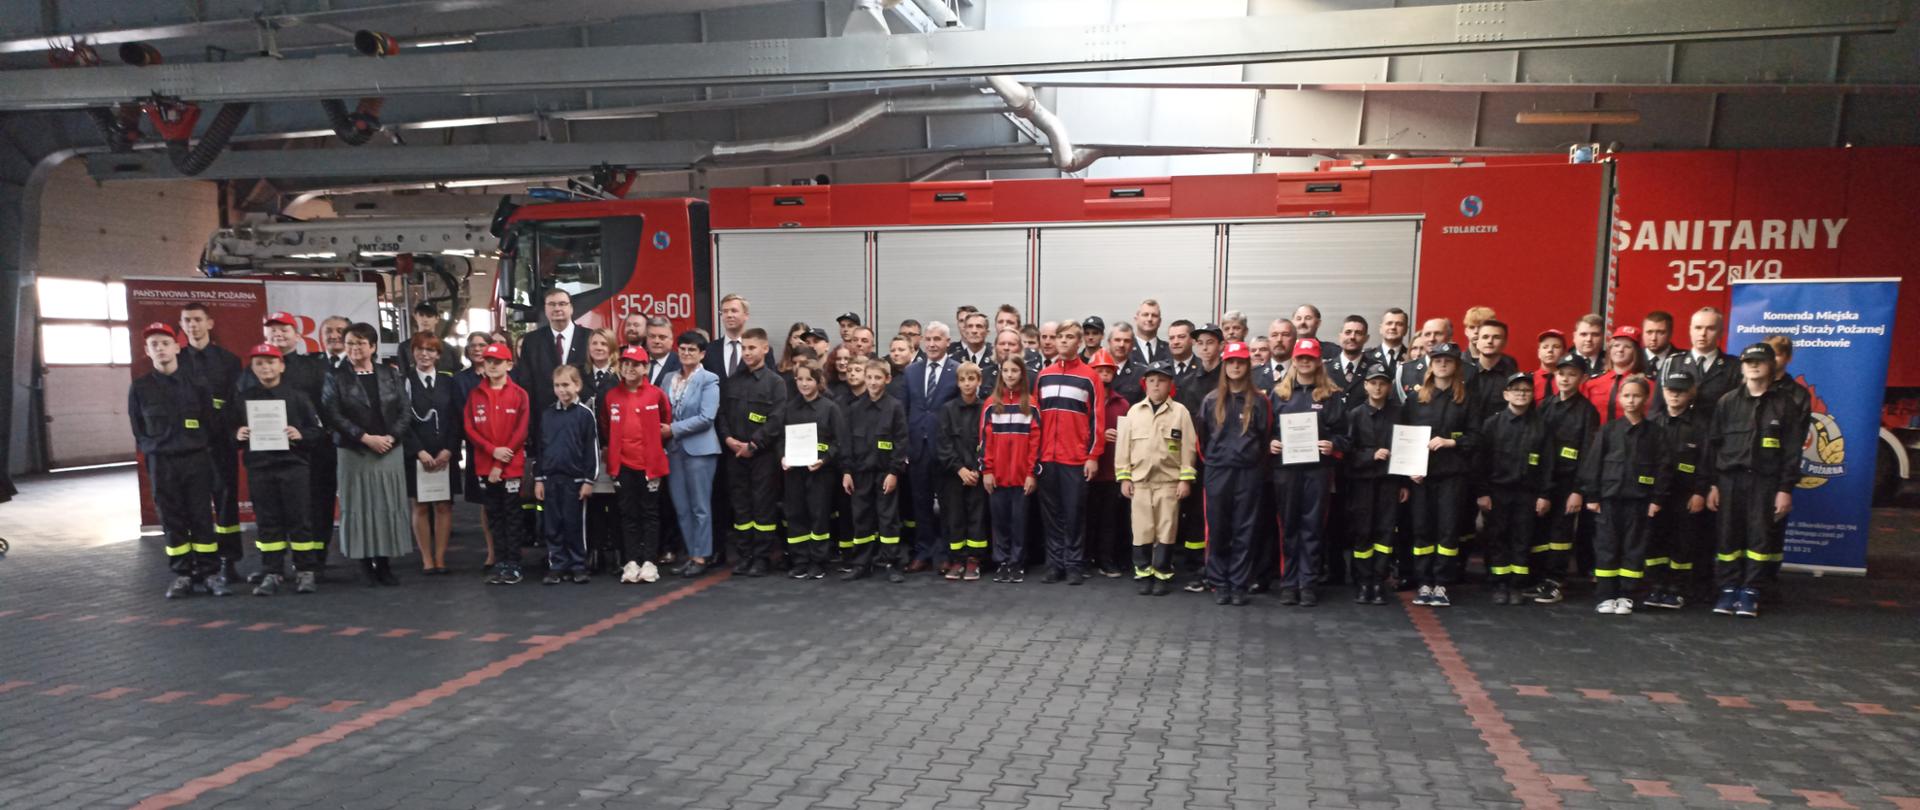 Uroczystość wręczenia promes dotacji celowej dla Ochotniczych Straży Pożarnych na zakup sprzętu dla członków Młodzieżowych Drużyn Pożarniczych z terenu miasta Częstochowy i powiatu częstochowskiego